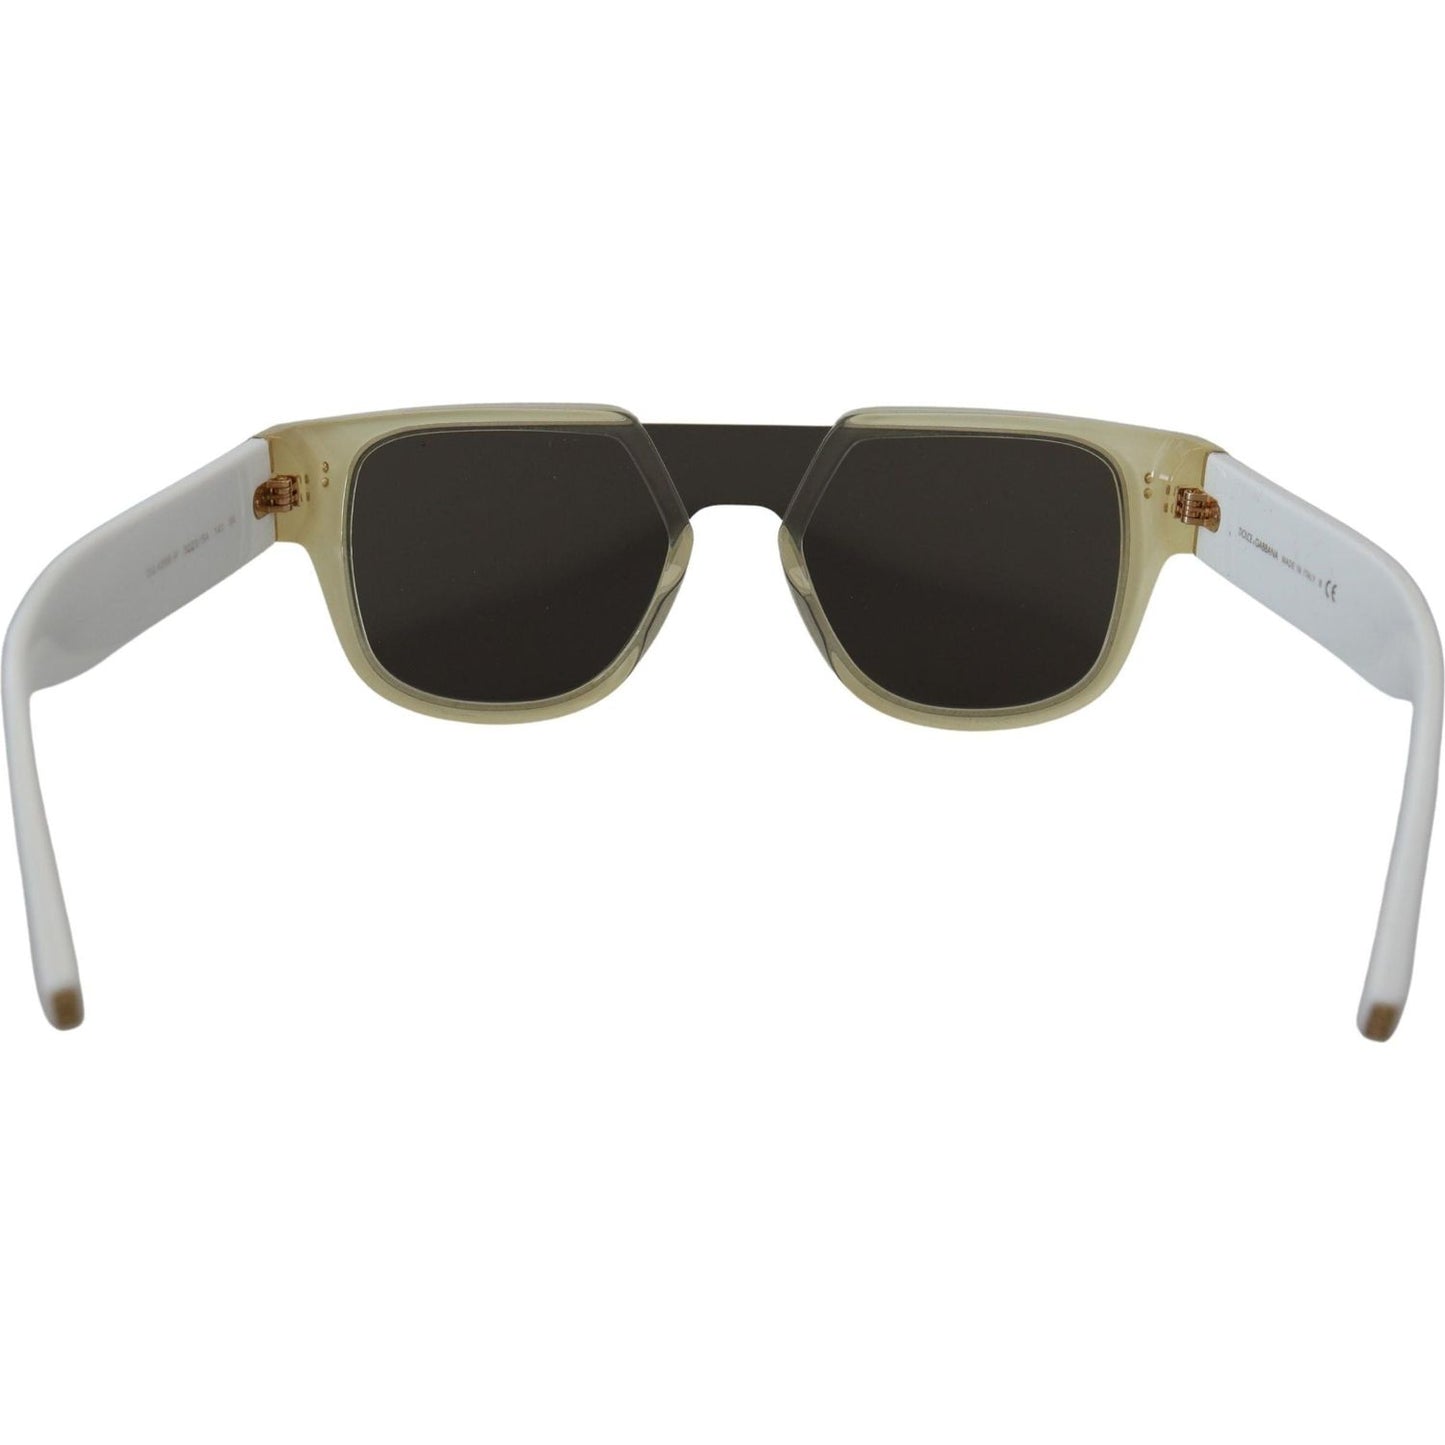 Dolce & Gabbana Elegant White Acetate Sunglasses for Women white-acetate-full-rim-frame-shades-dg4356f-sunglasses IMG_4038-scaled-3affdd90-e0f.jpg